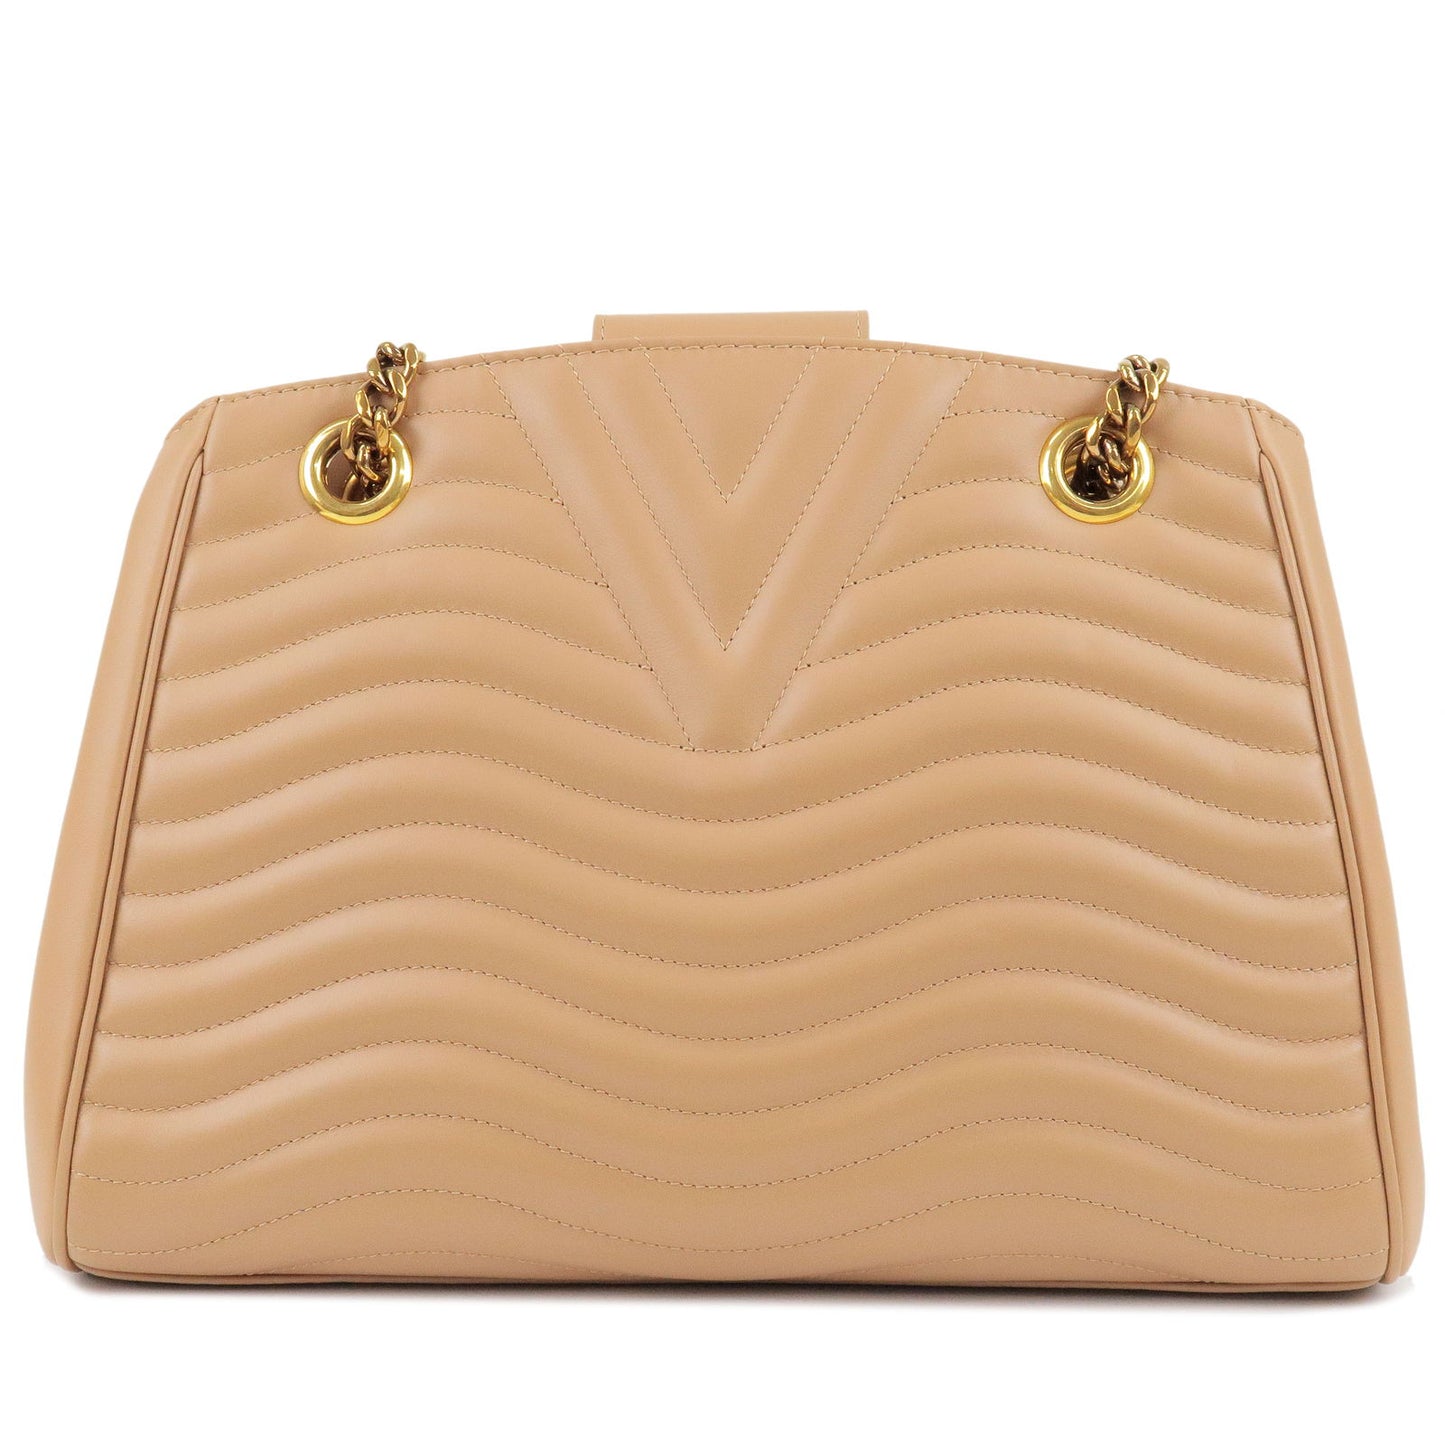 Louis Vuitton Wave Chain Tote Bag Shoulder Bag Beige M53900